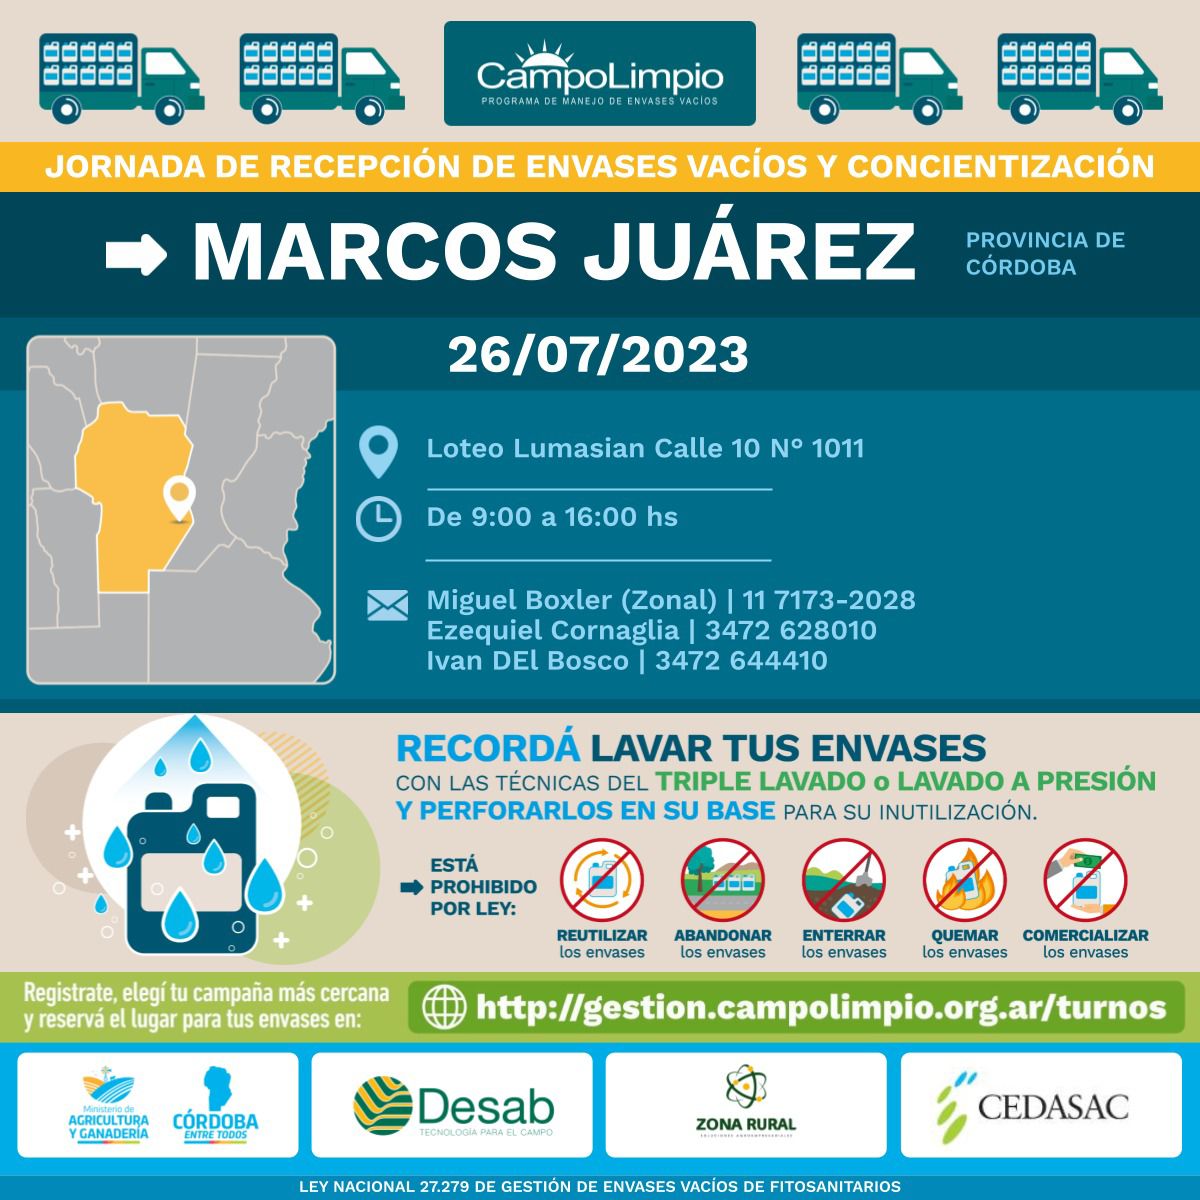 Atención Marcos Juárez‼‼

#ProductoresMarcosJuárez
#MarcosJuárez
#CampoLimpio #CAT #ProducciónAgrícola #Sustentable